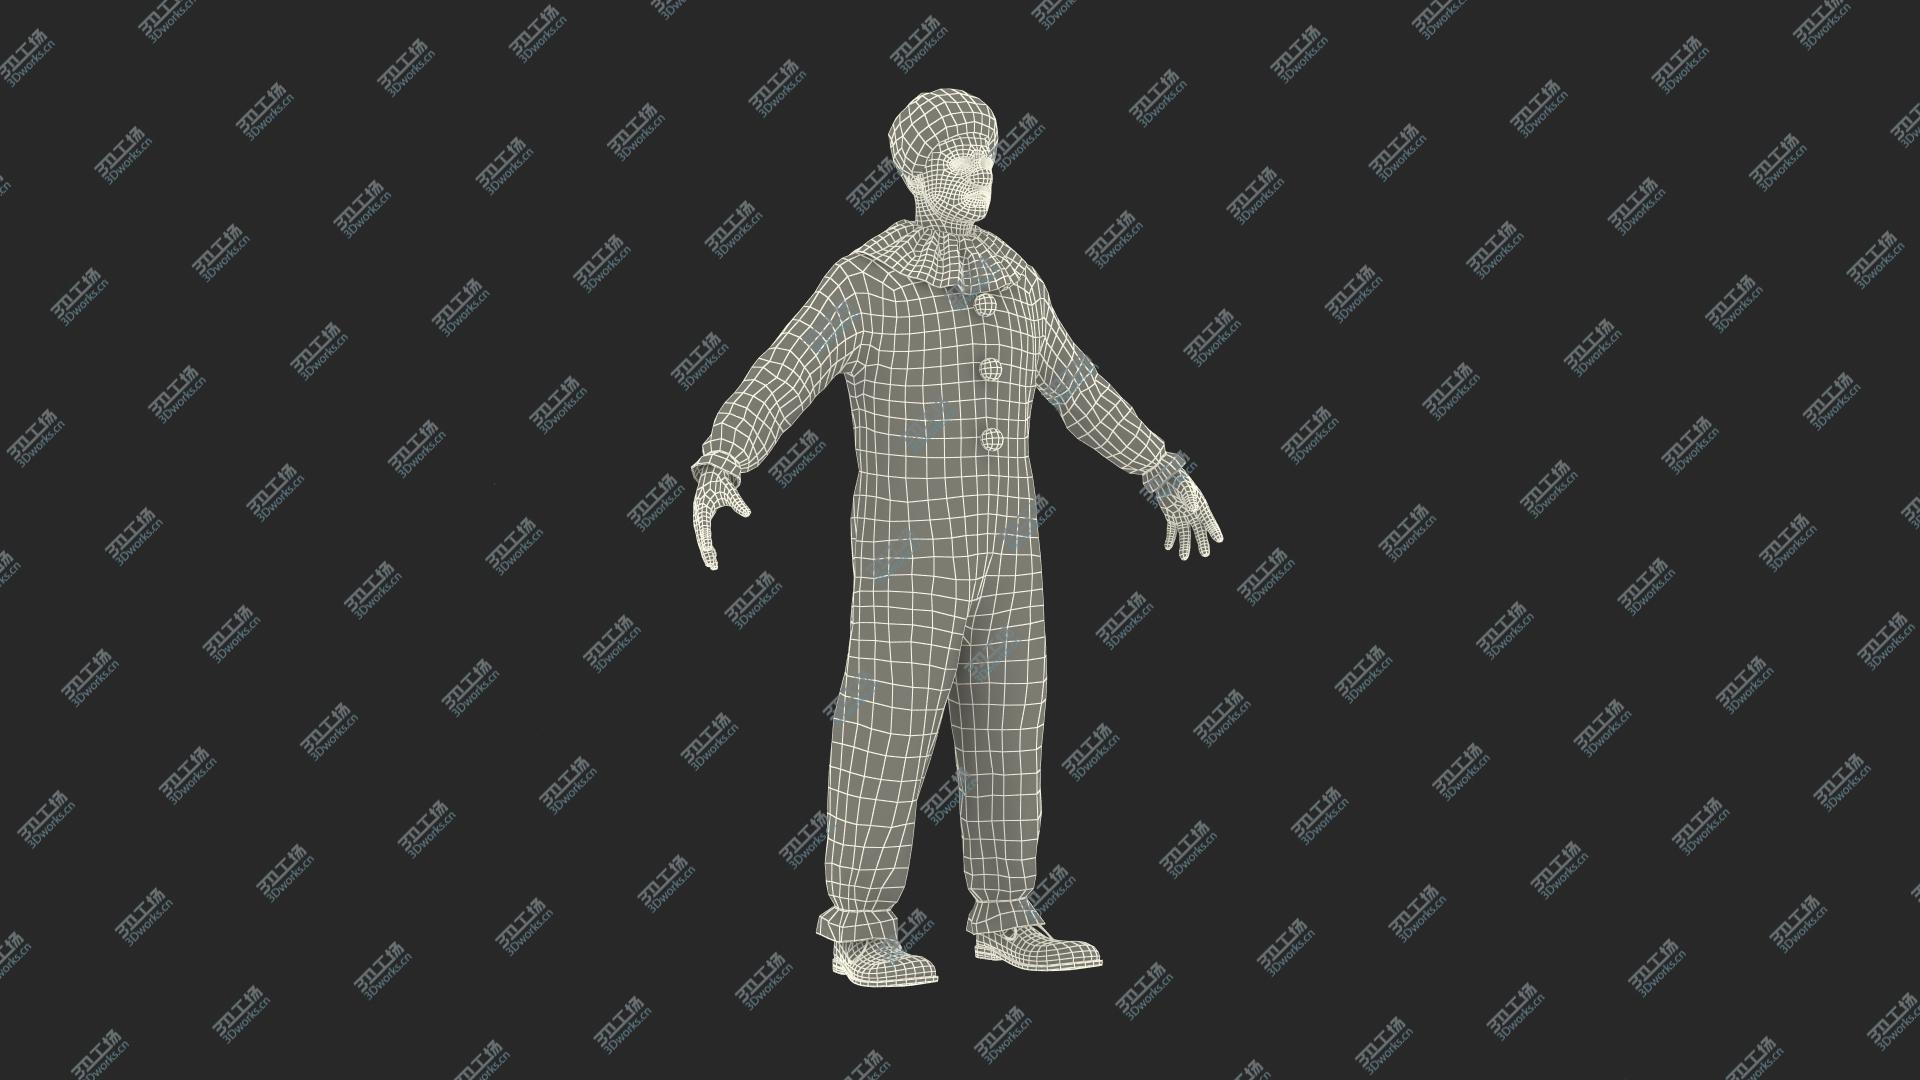 images/goods_img/202104093/3D model Funny Clown Costume Fur/3.jpg